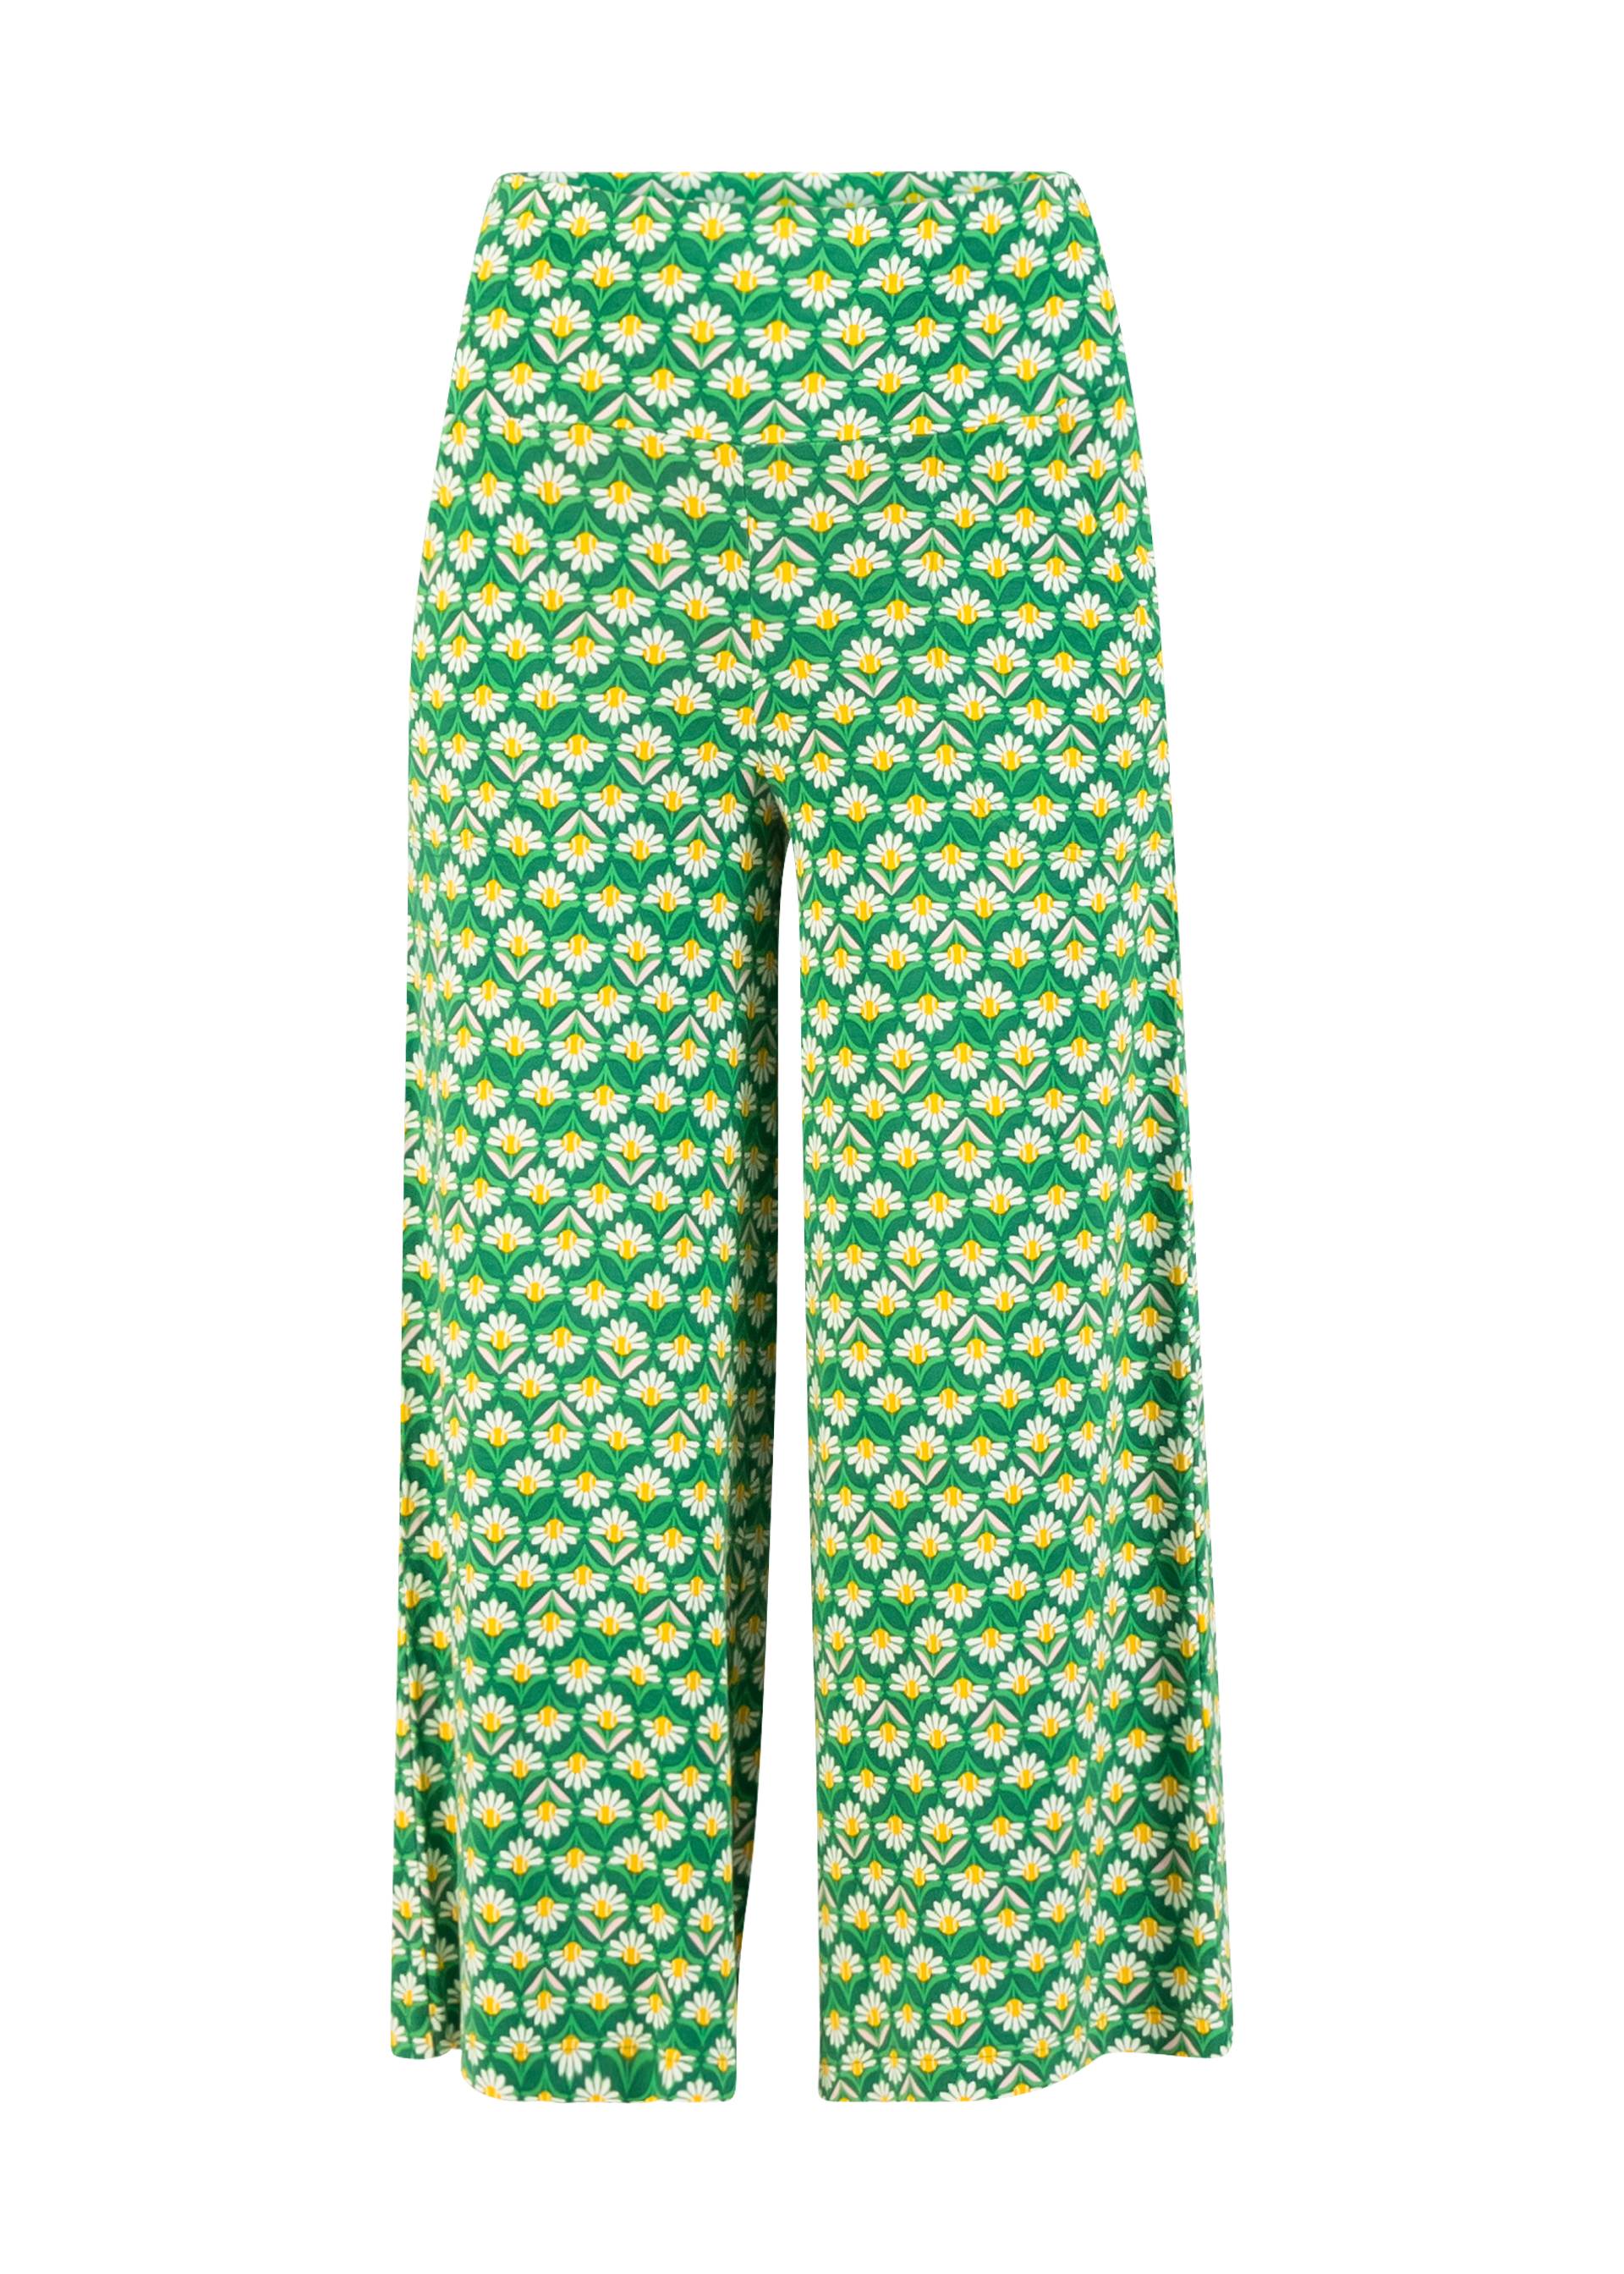 Culotte Cul de Berlin, lovely tennis daisy, Trousers, Green